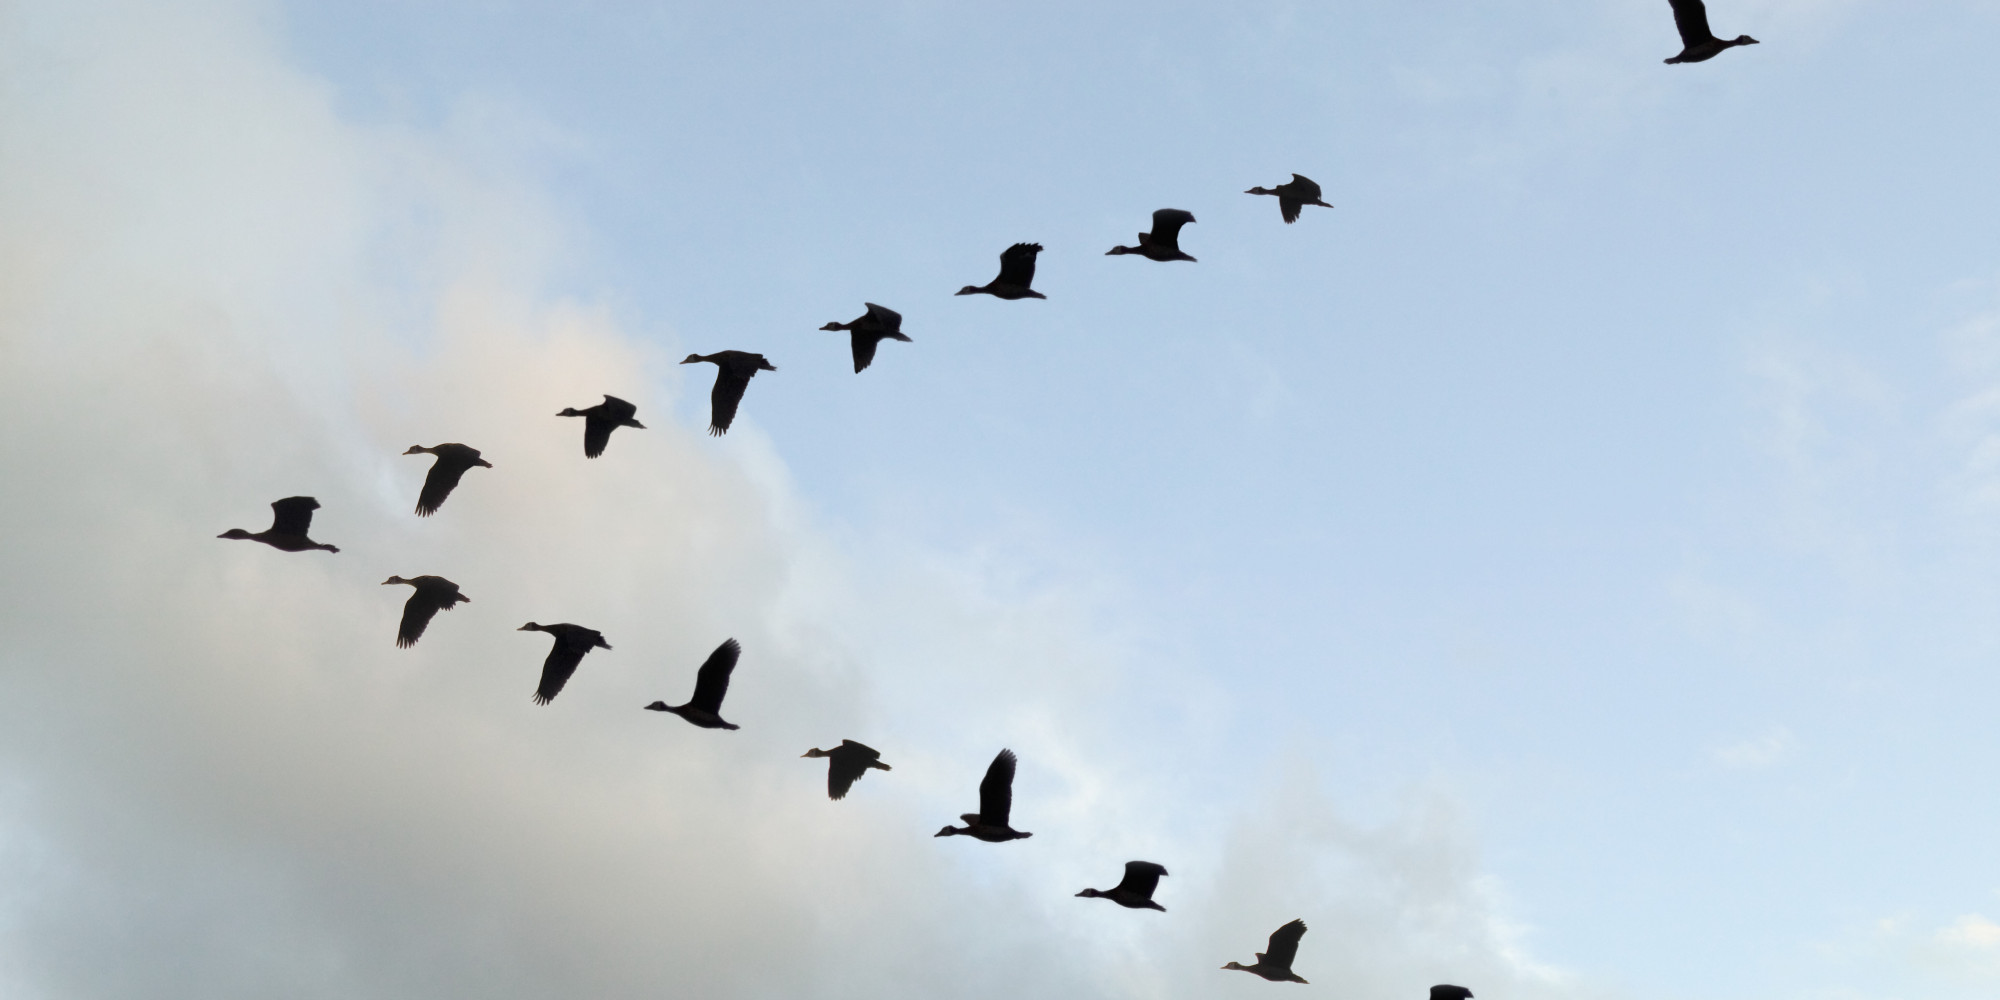 V formation of Birds